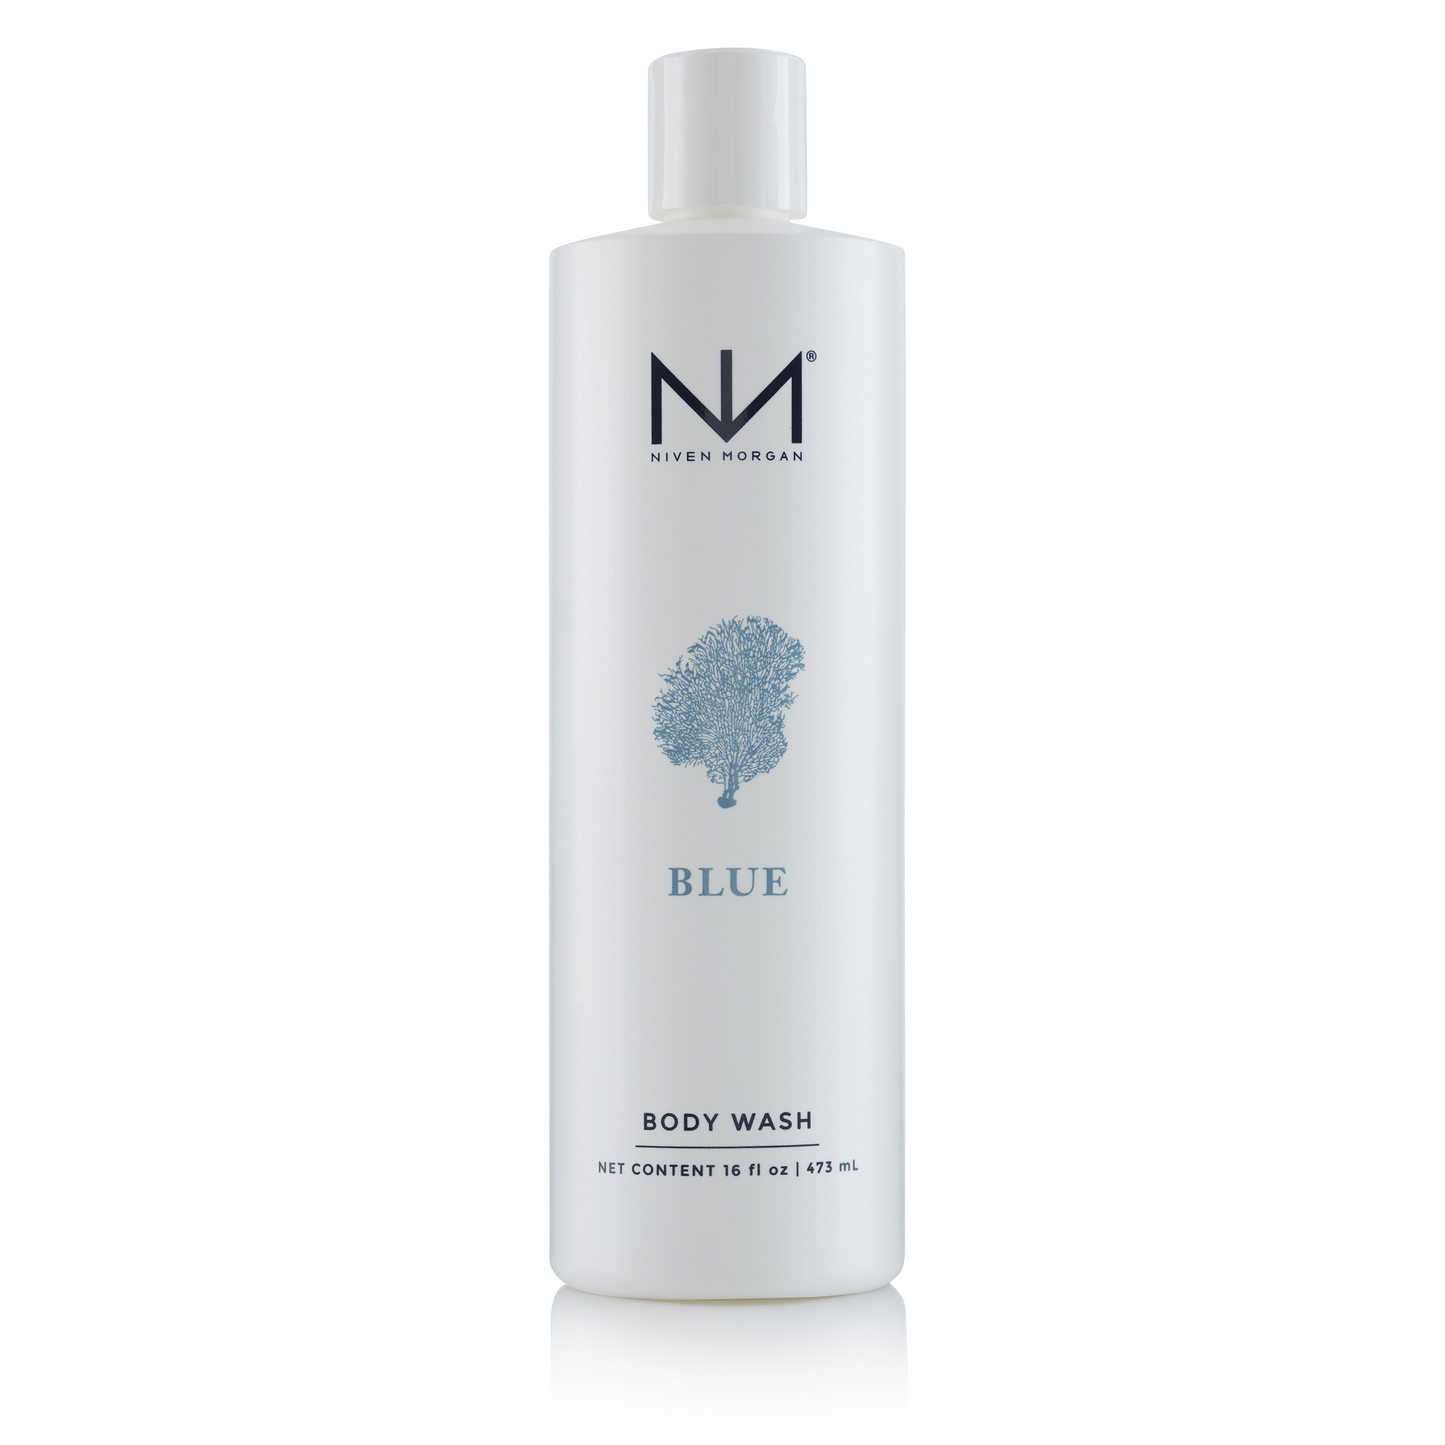 Niven Morgan B-BWB Blue Body Wash